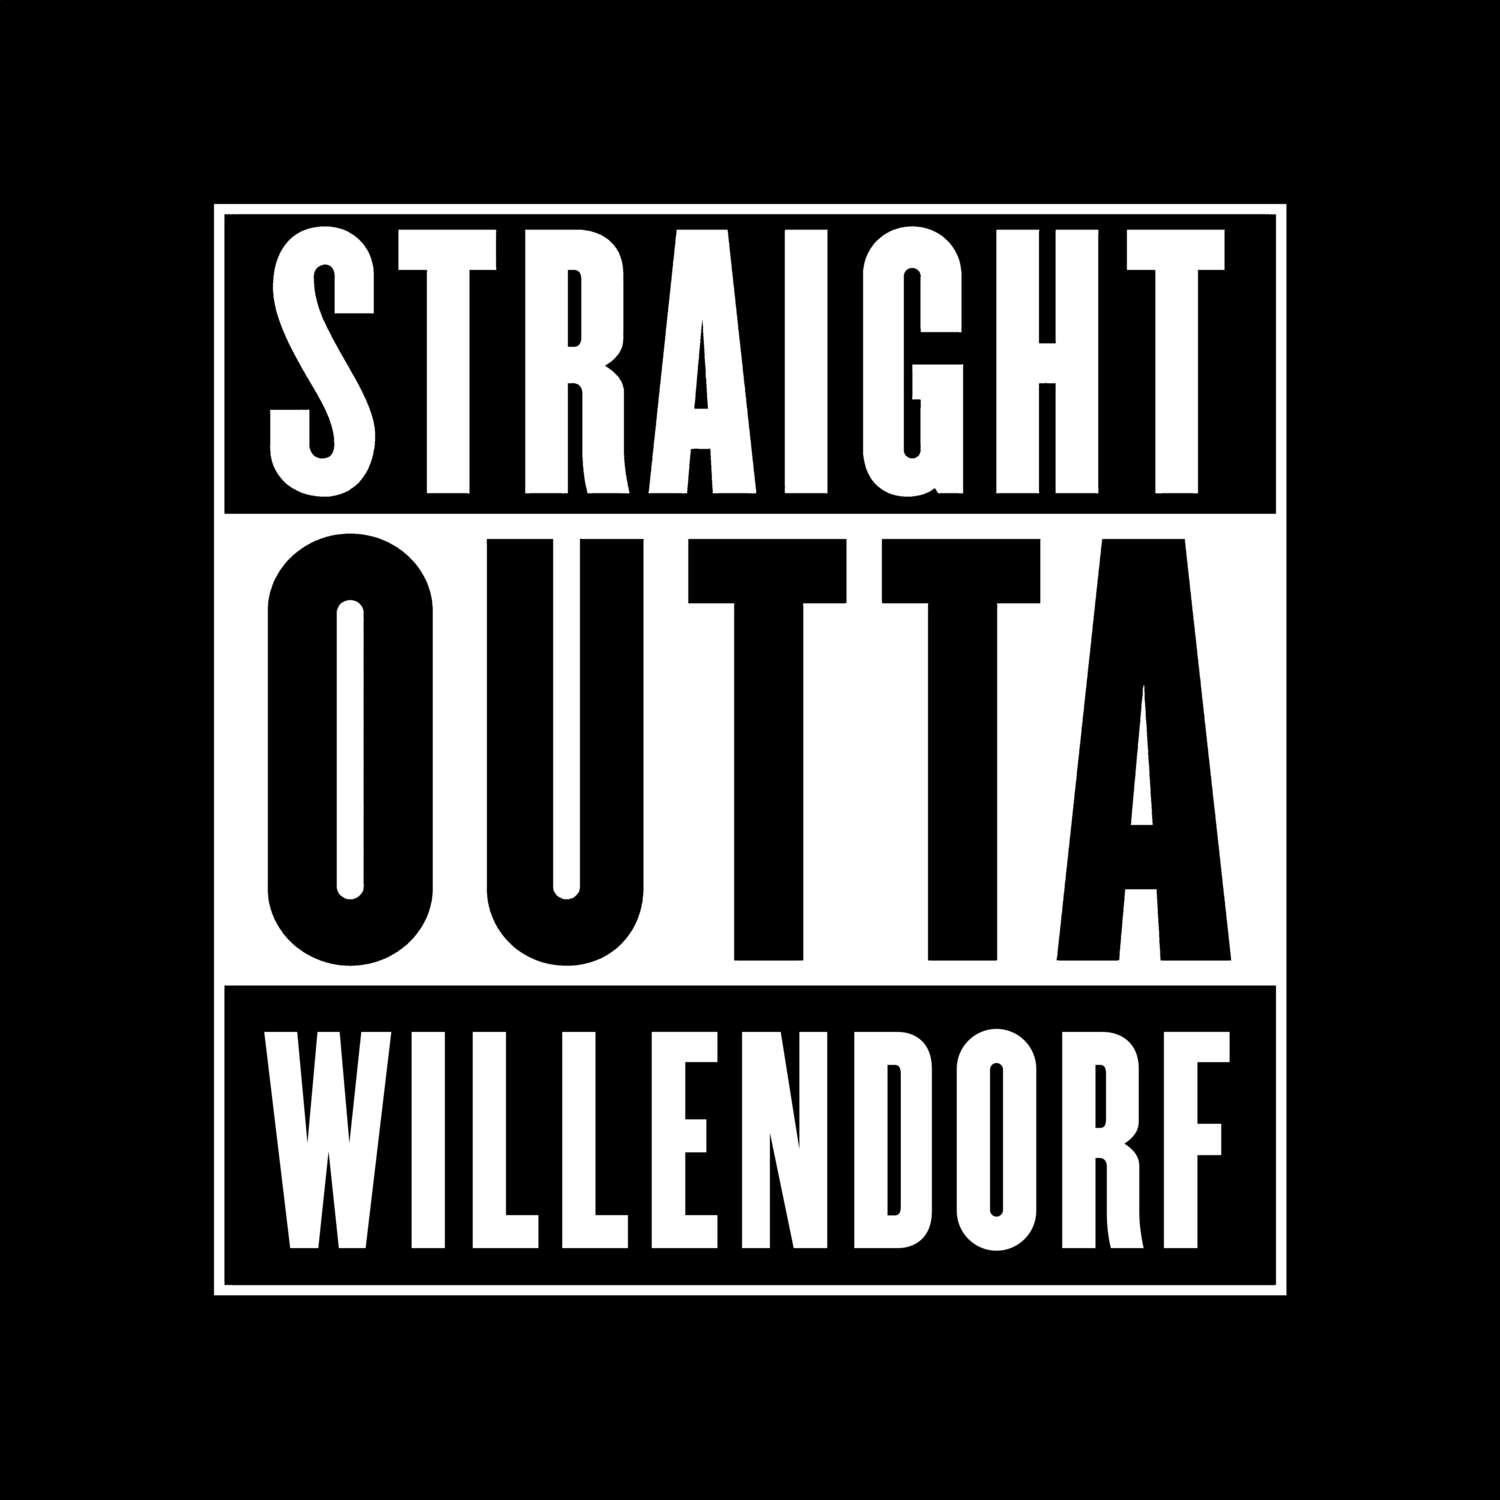 Willendorf T-Shirt »Straight Outta«